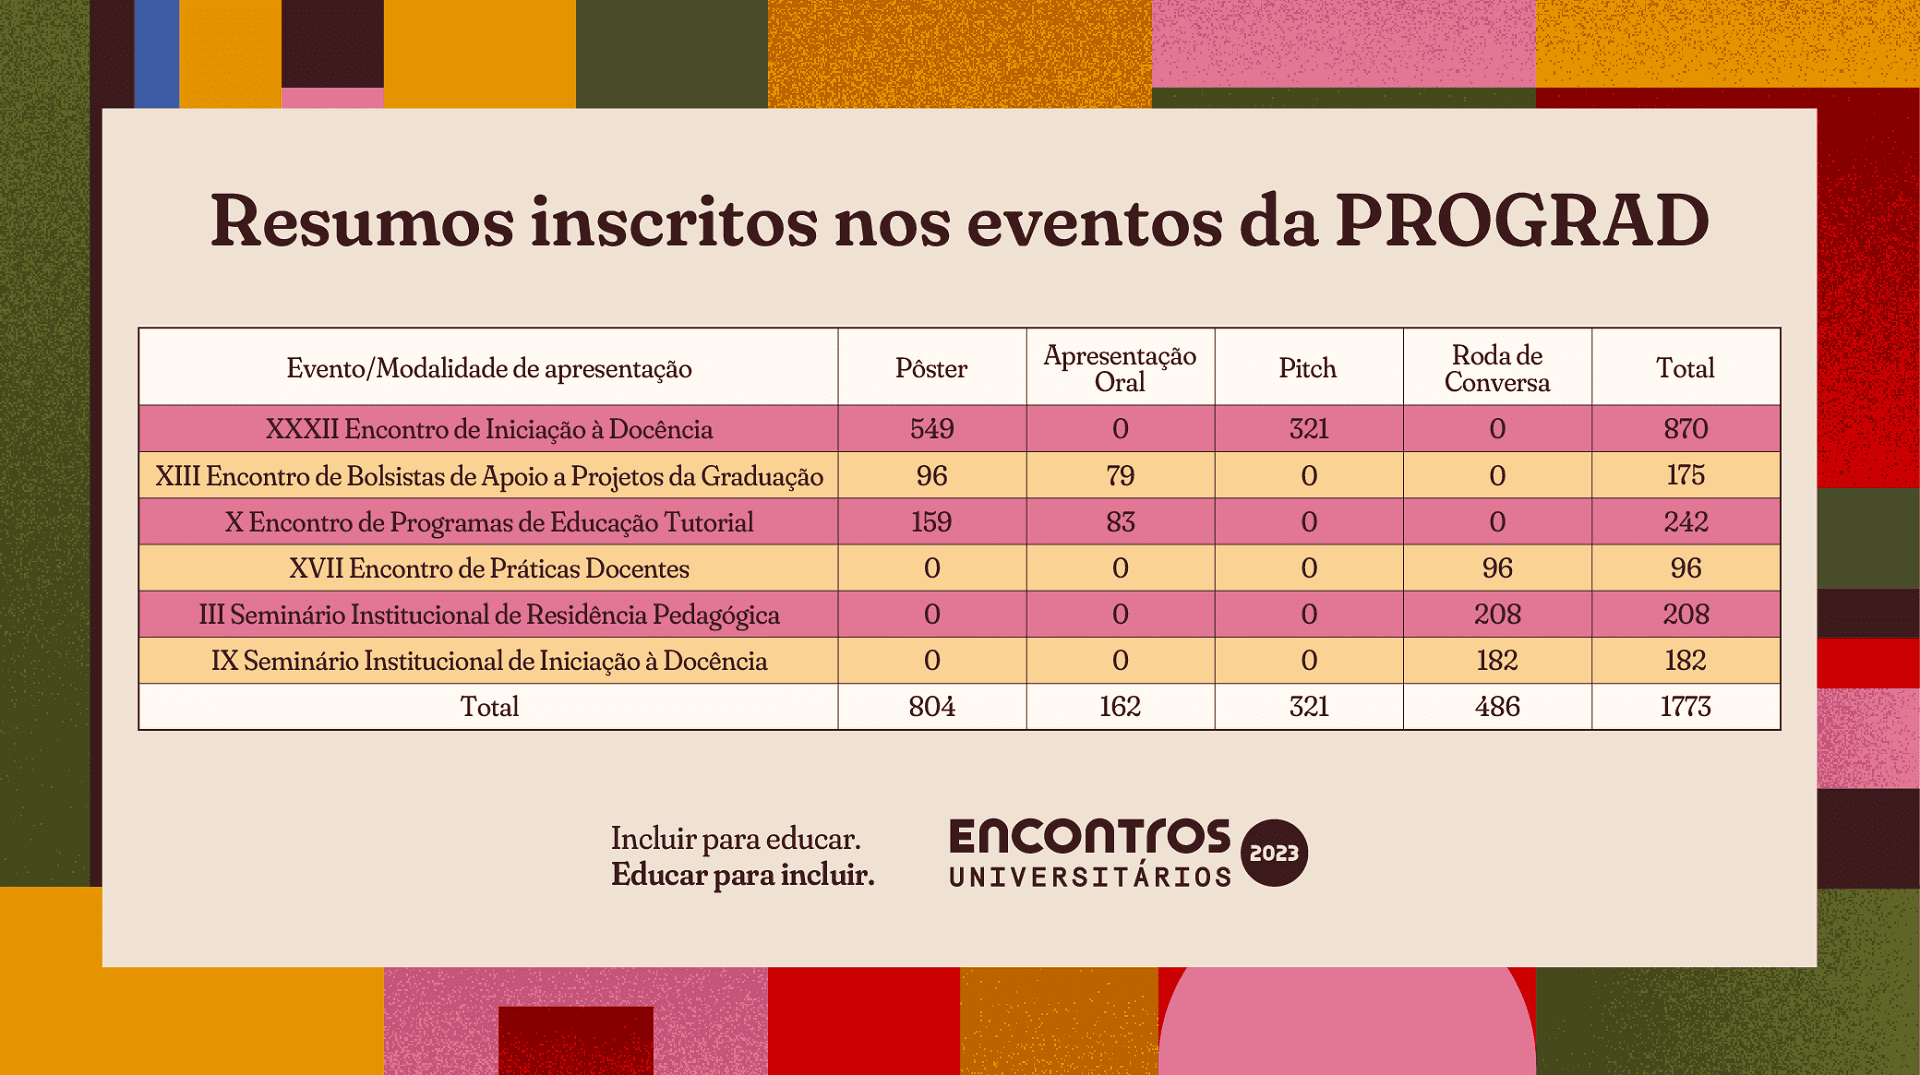 Tabela com quantitativos de resumos inscritos por evento da PROGRAD e modalidade de apresentação 